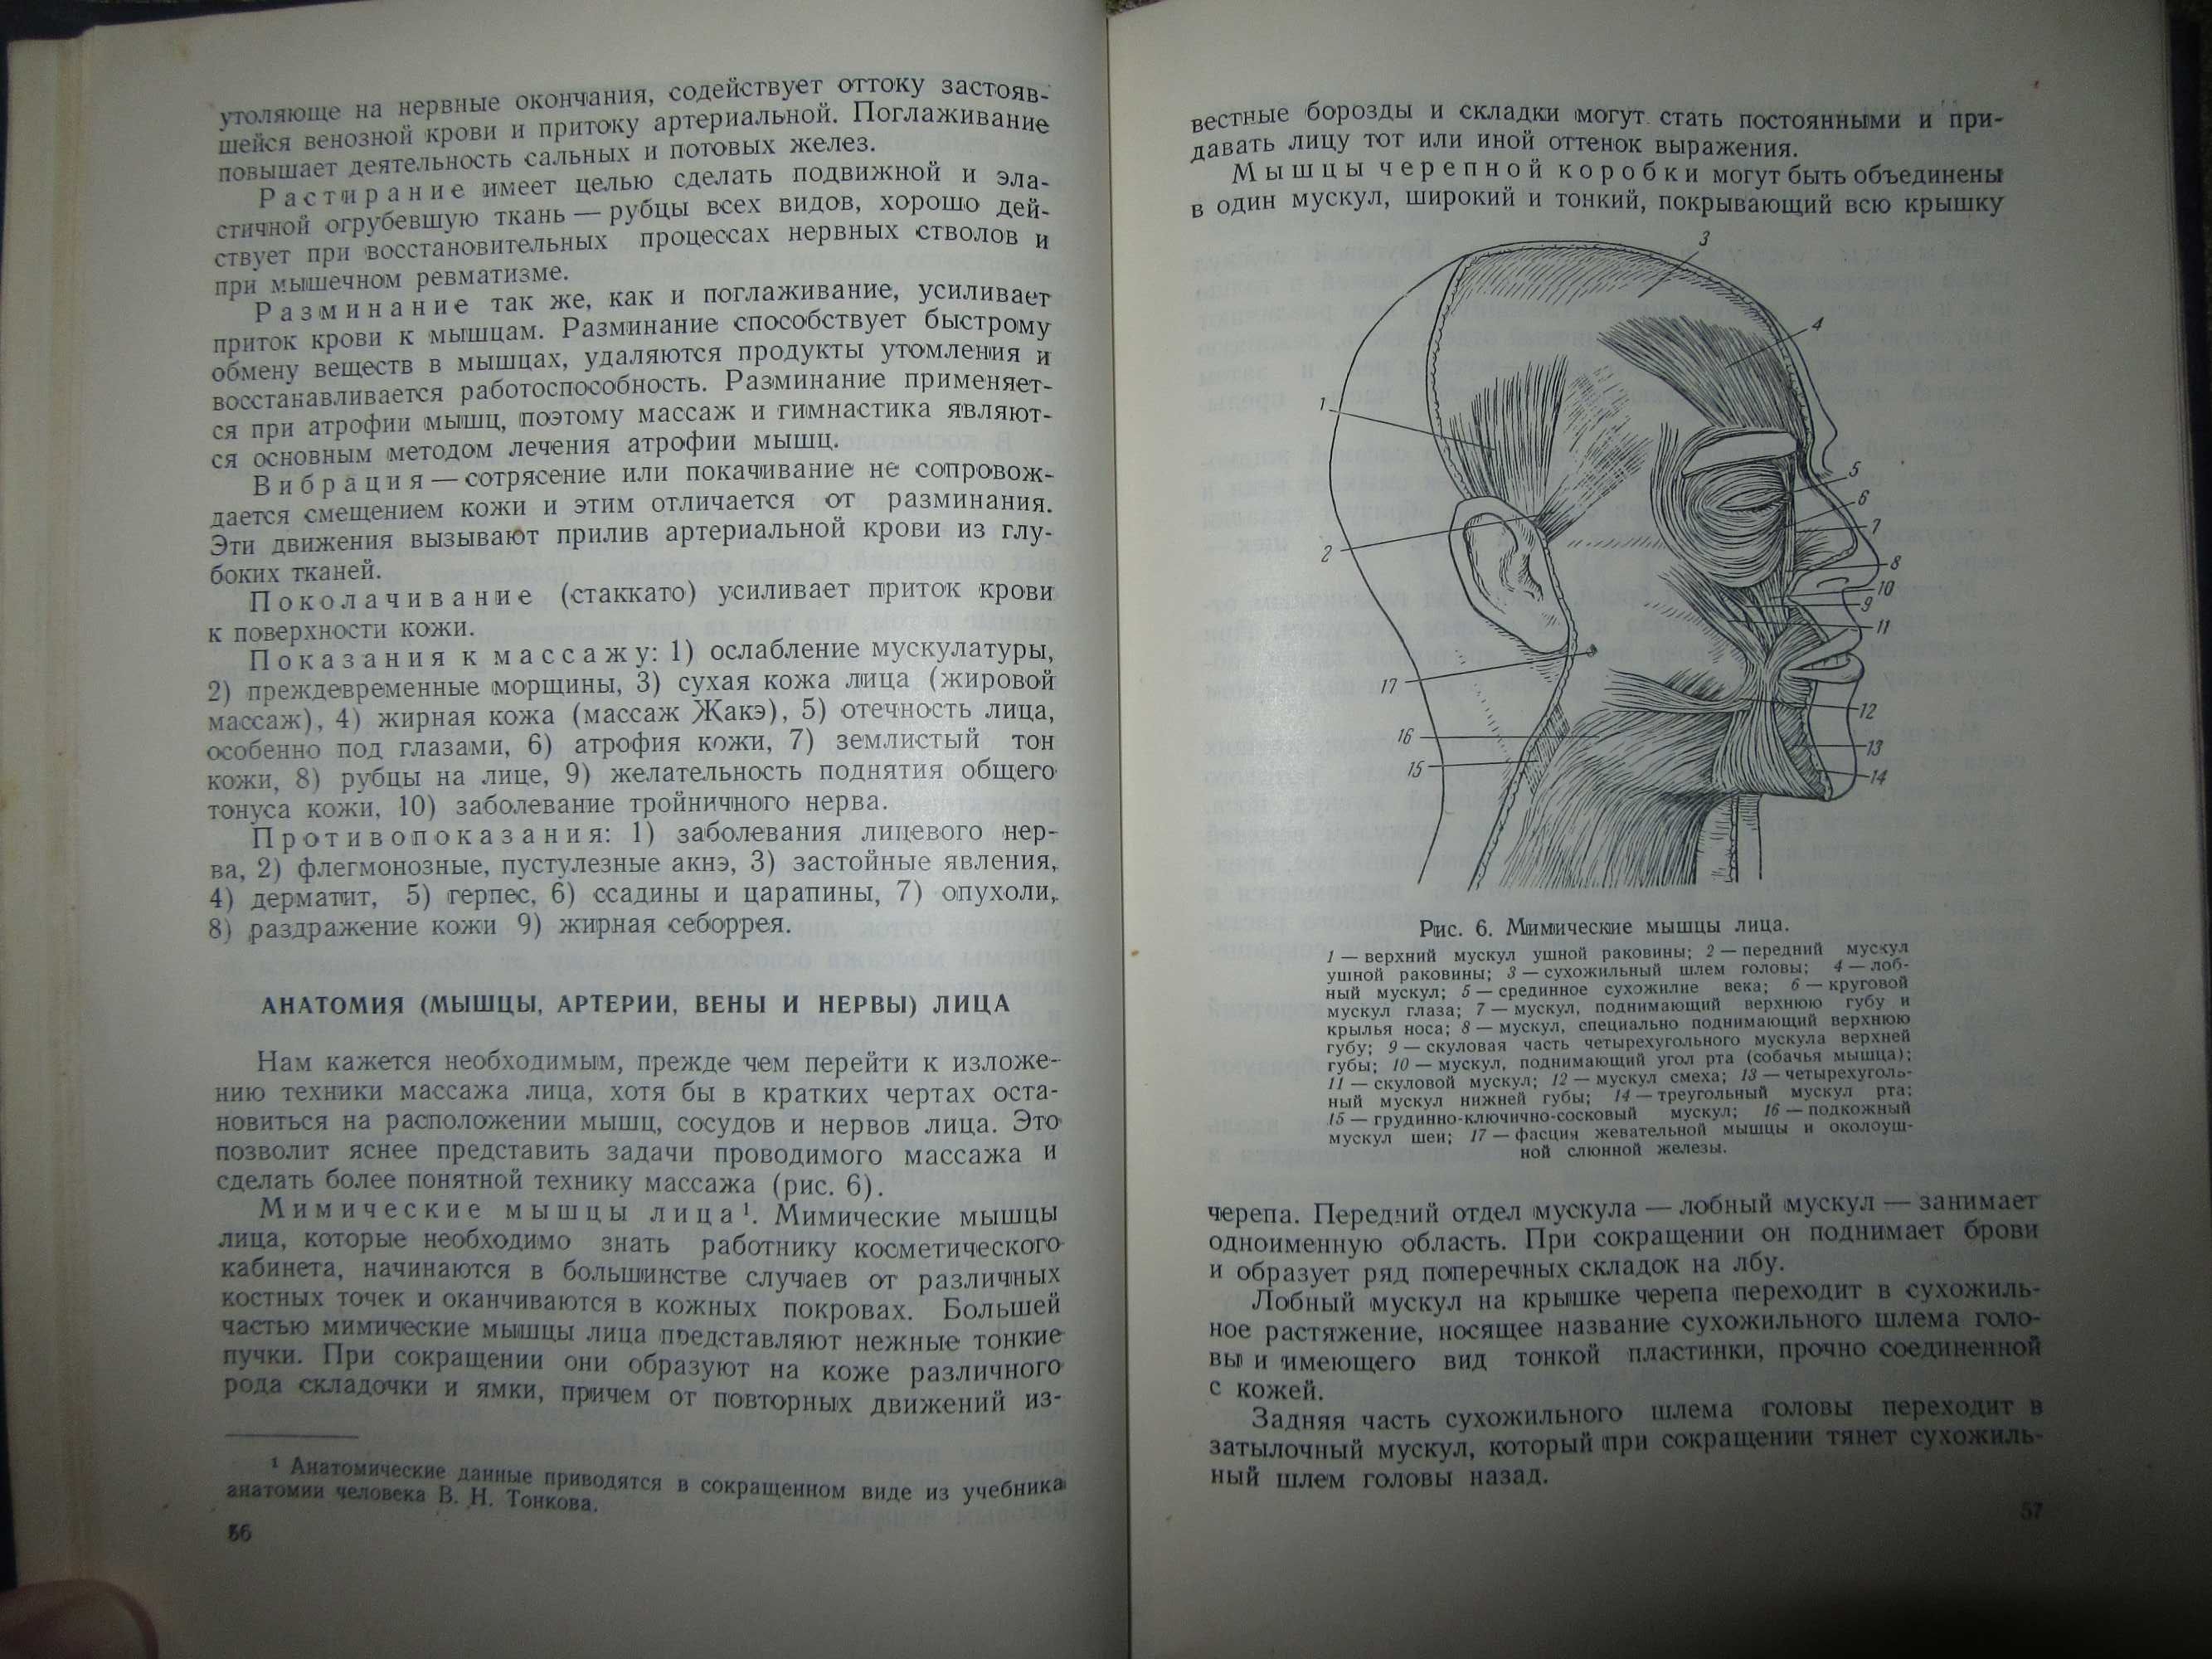 Врачебная косметика. Картамышев А.И., Арнольд В.А "Медгиз".1955 г.